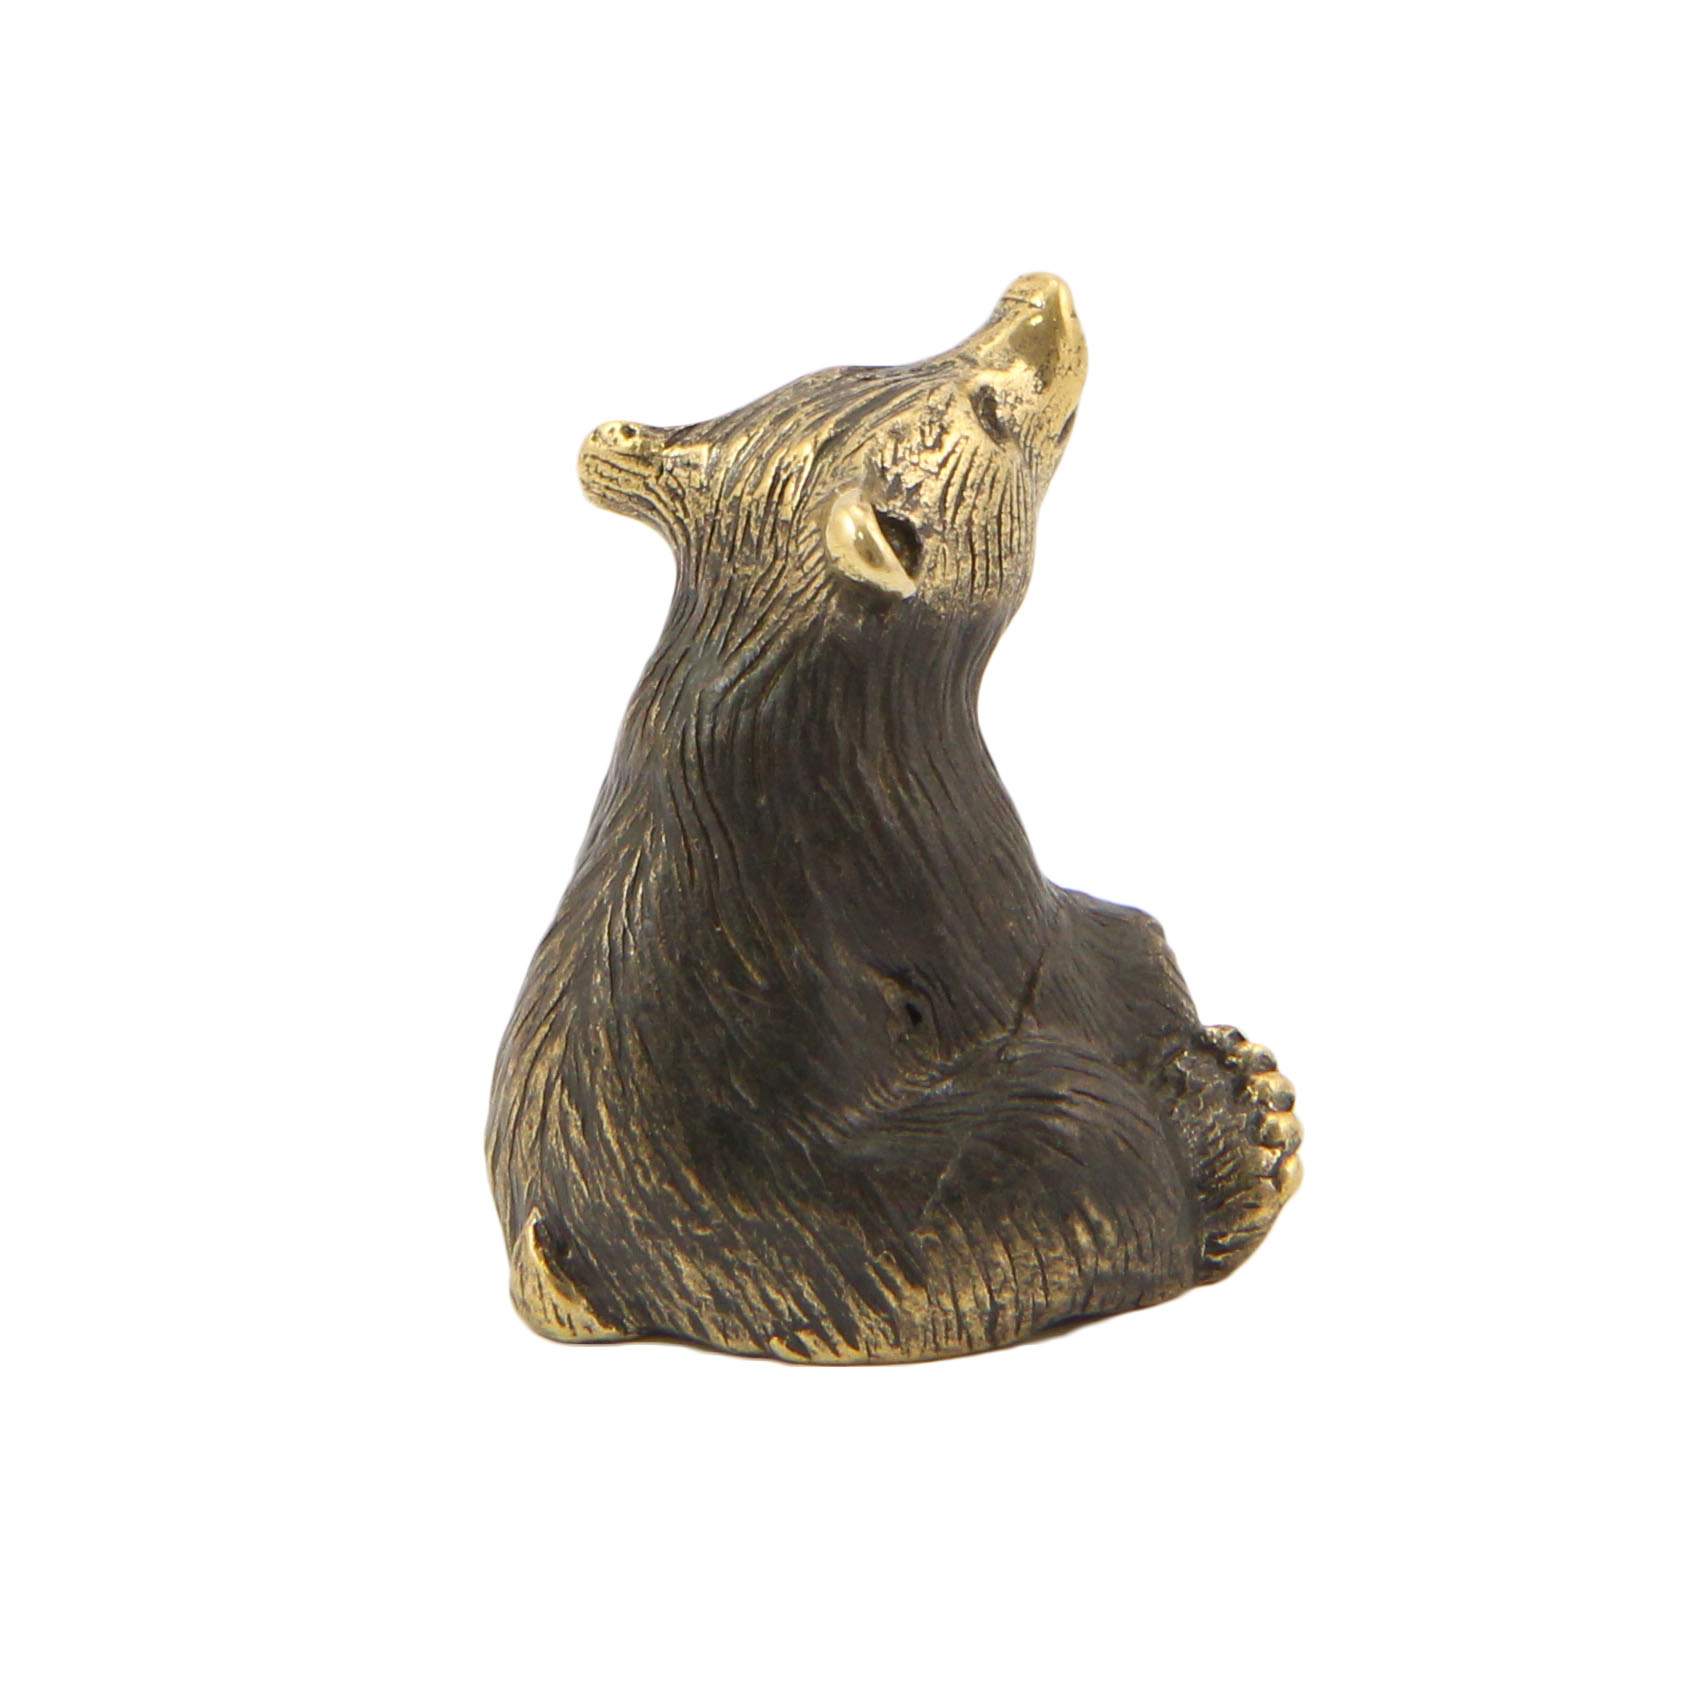 Бронзовый сувенир медведь сидячийФото 15436-05.jpg